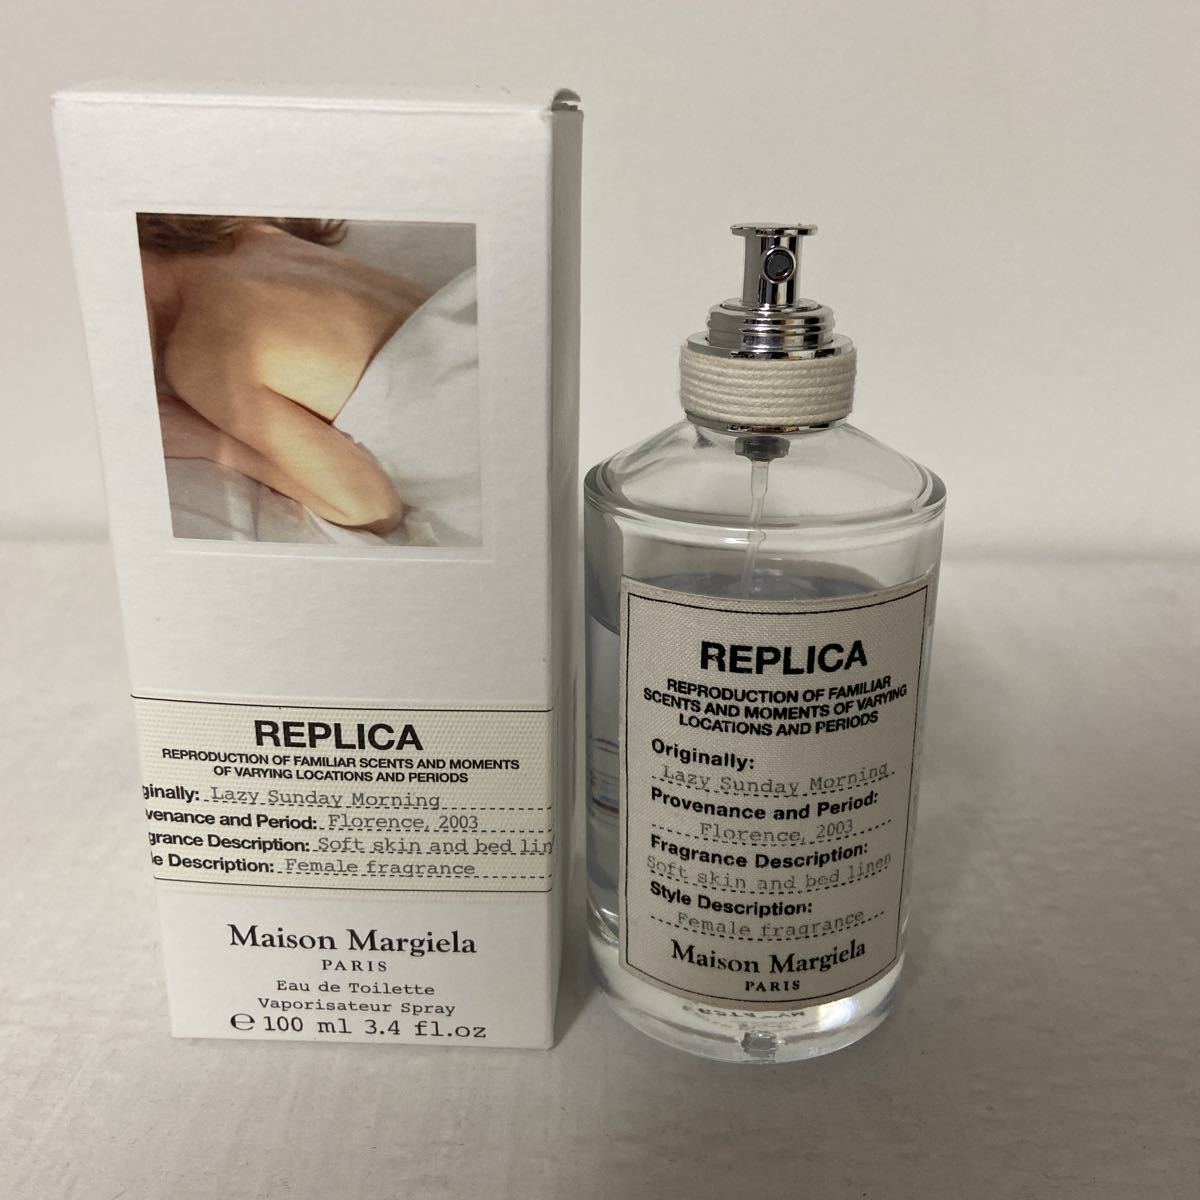 オープニング REPLICAメゾンマルジェラ 香水レプリカ レイジーサンデーモーニング10ml